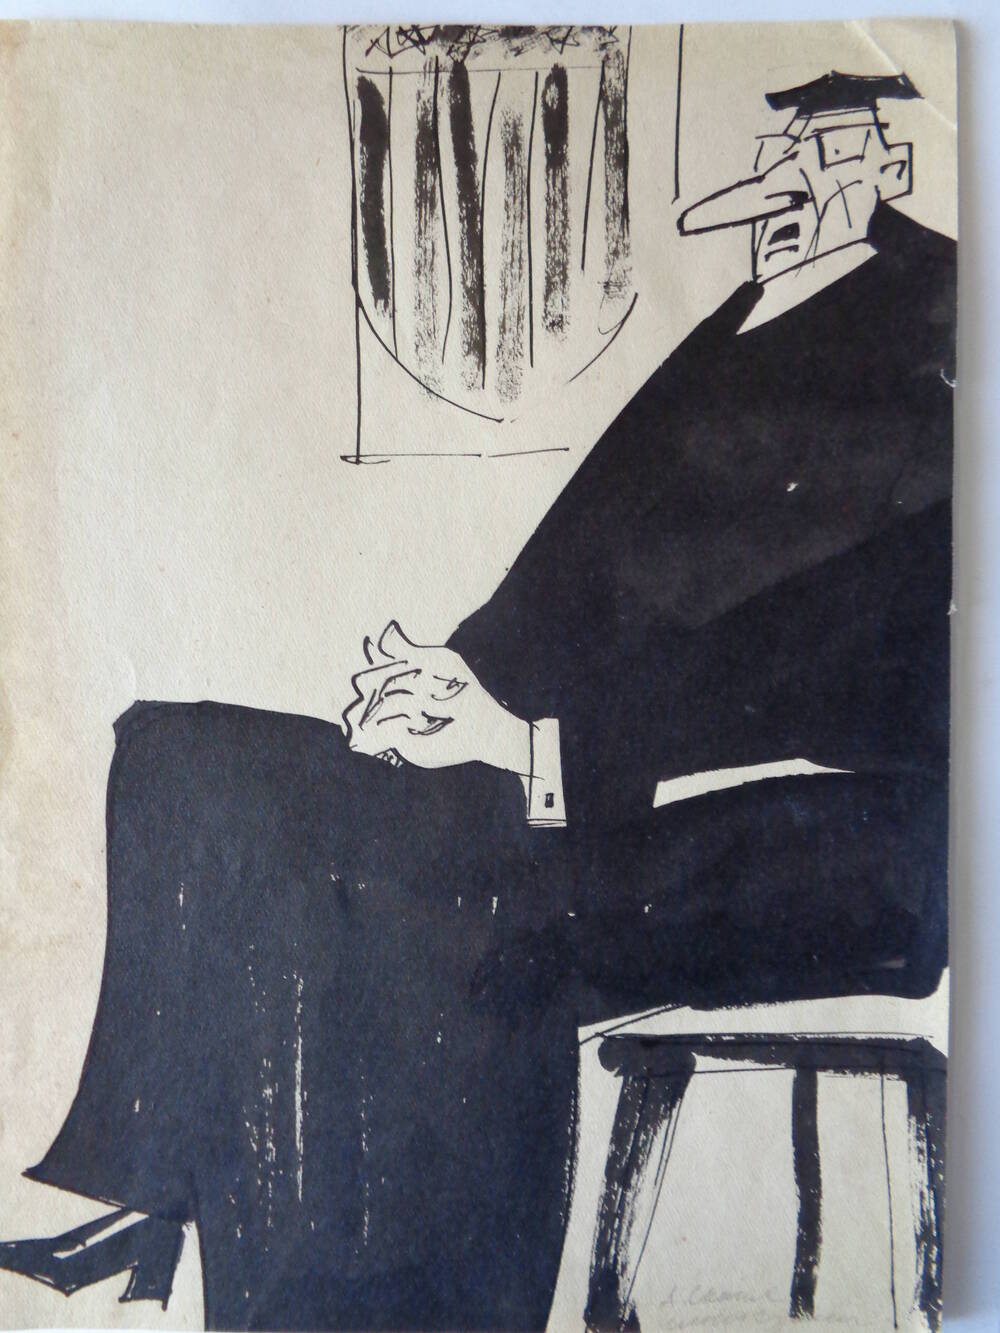 Иллюстрация книжная с фигурой сидящего судьи в мантии.